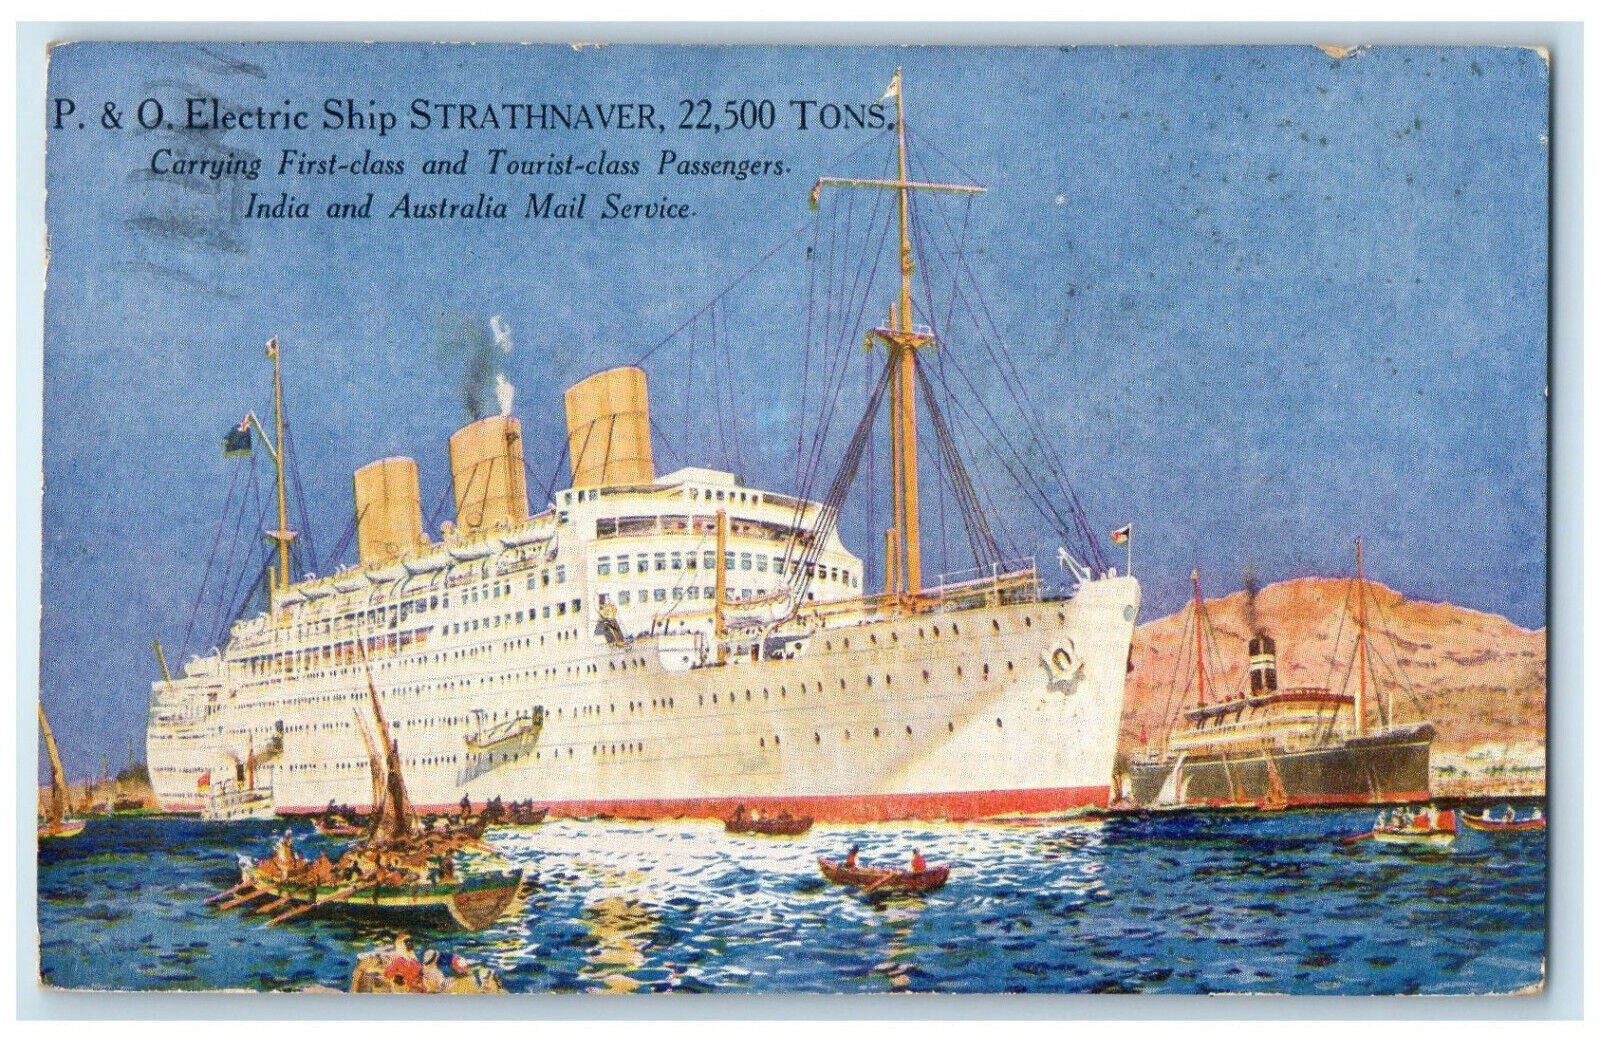 1935 P & O Electric Ship Strathnaver Marseille Gare France Vintage Postcard